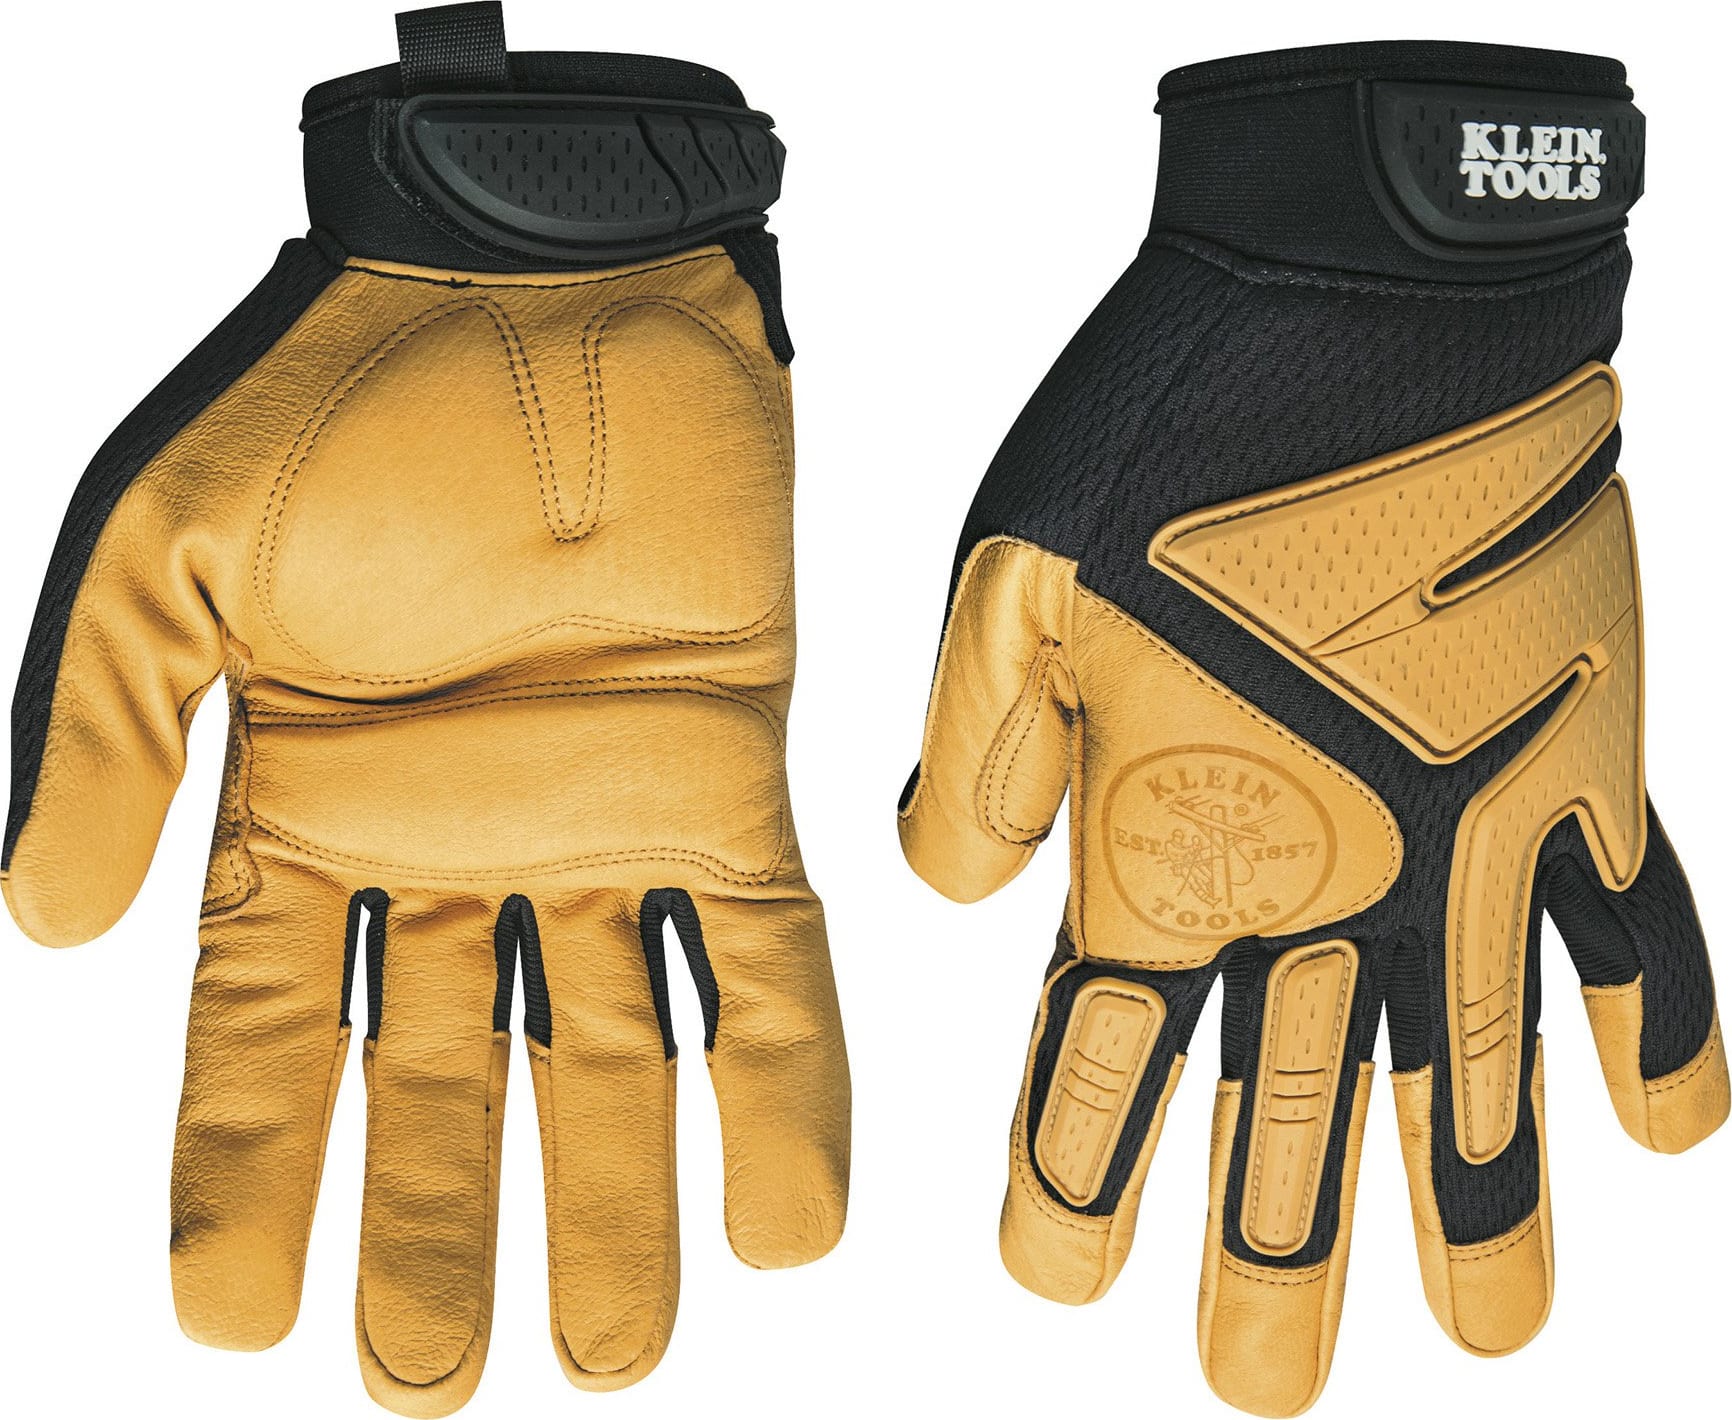 Klein_40220_21_22_Journeyman_Leather_Gloves